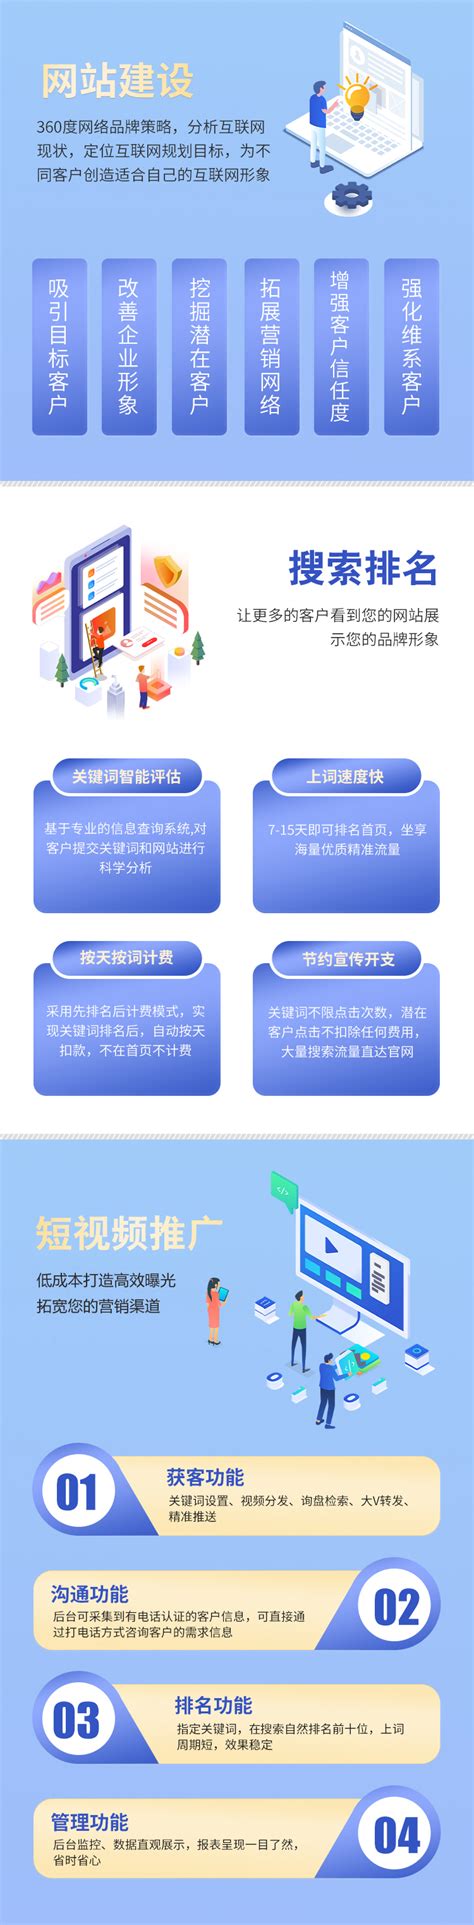 重庆网站建设与推广方案